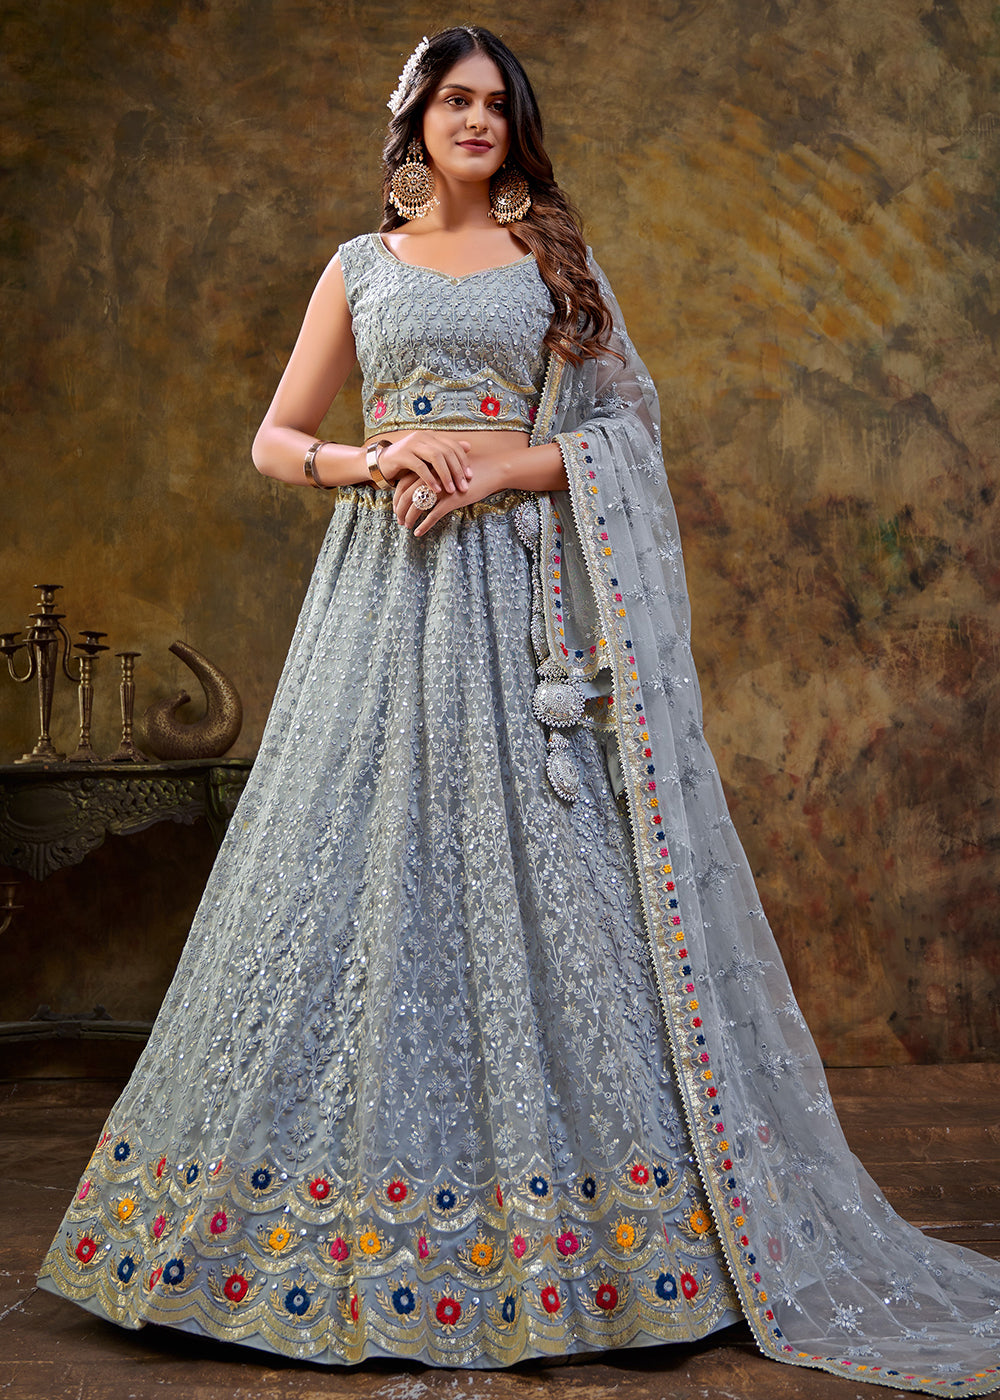 Buy Now Carolina Blue Premium Net Sequins Wedding Lehenga Choli Online in USA, UK, Canada & Worldwide at Empress Clothing.